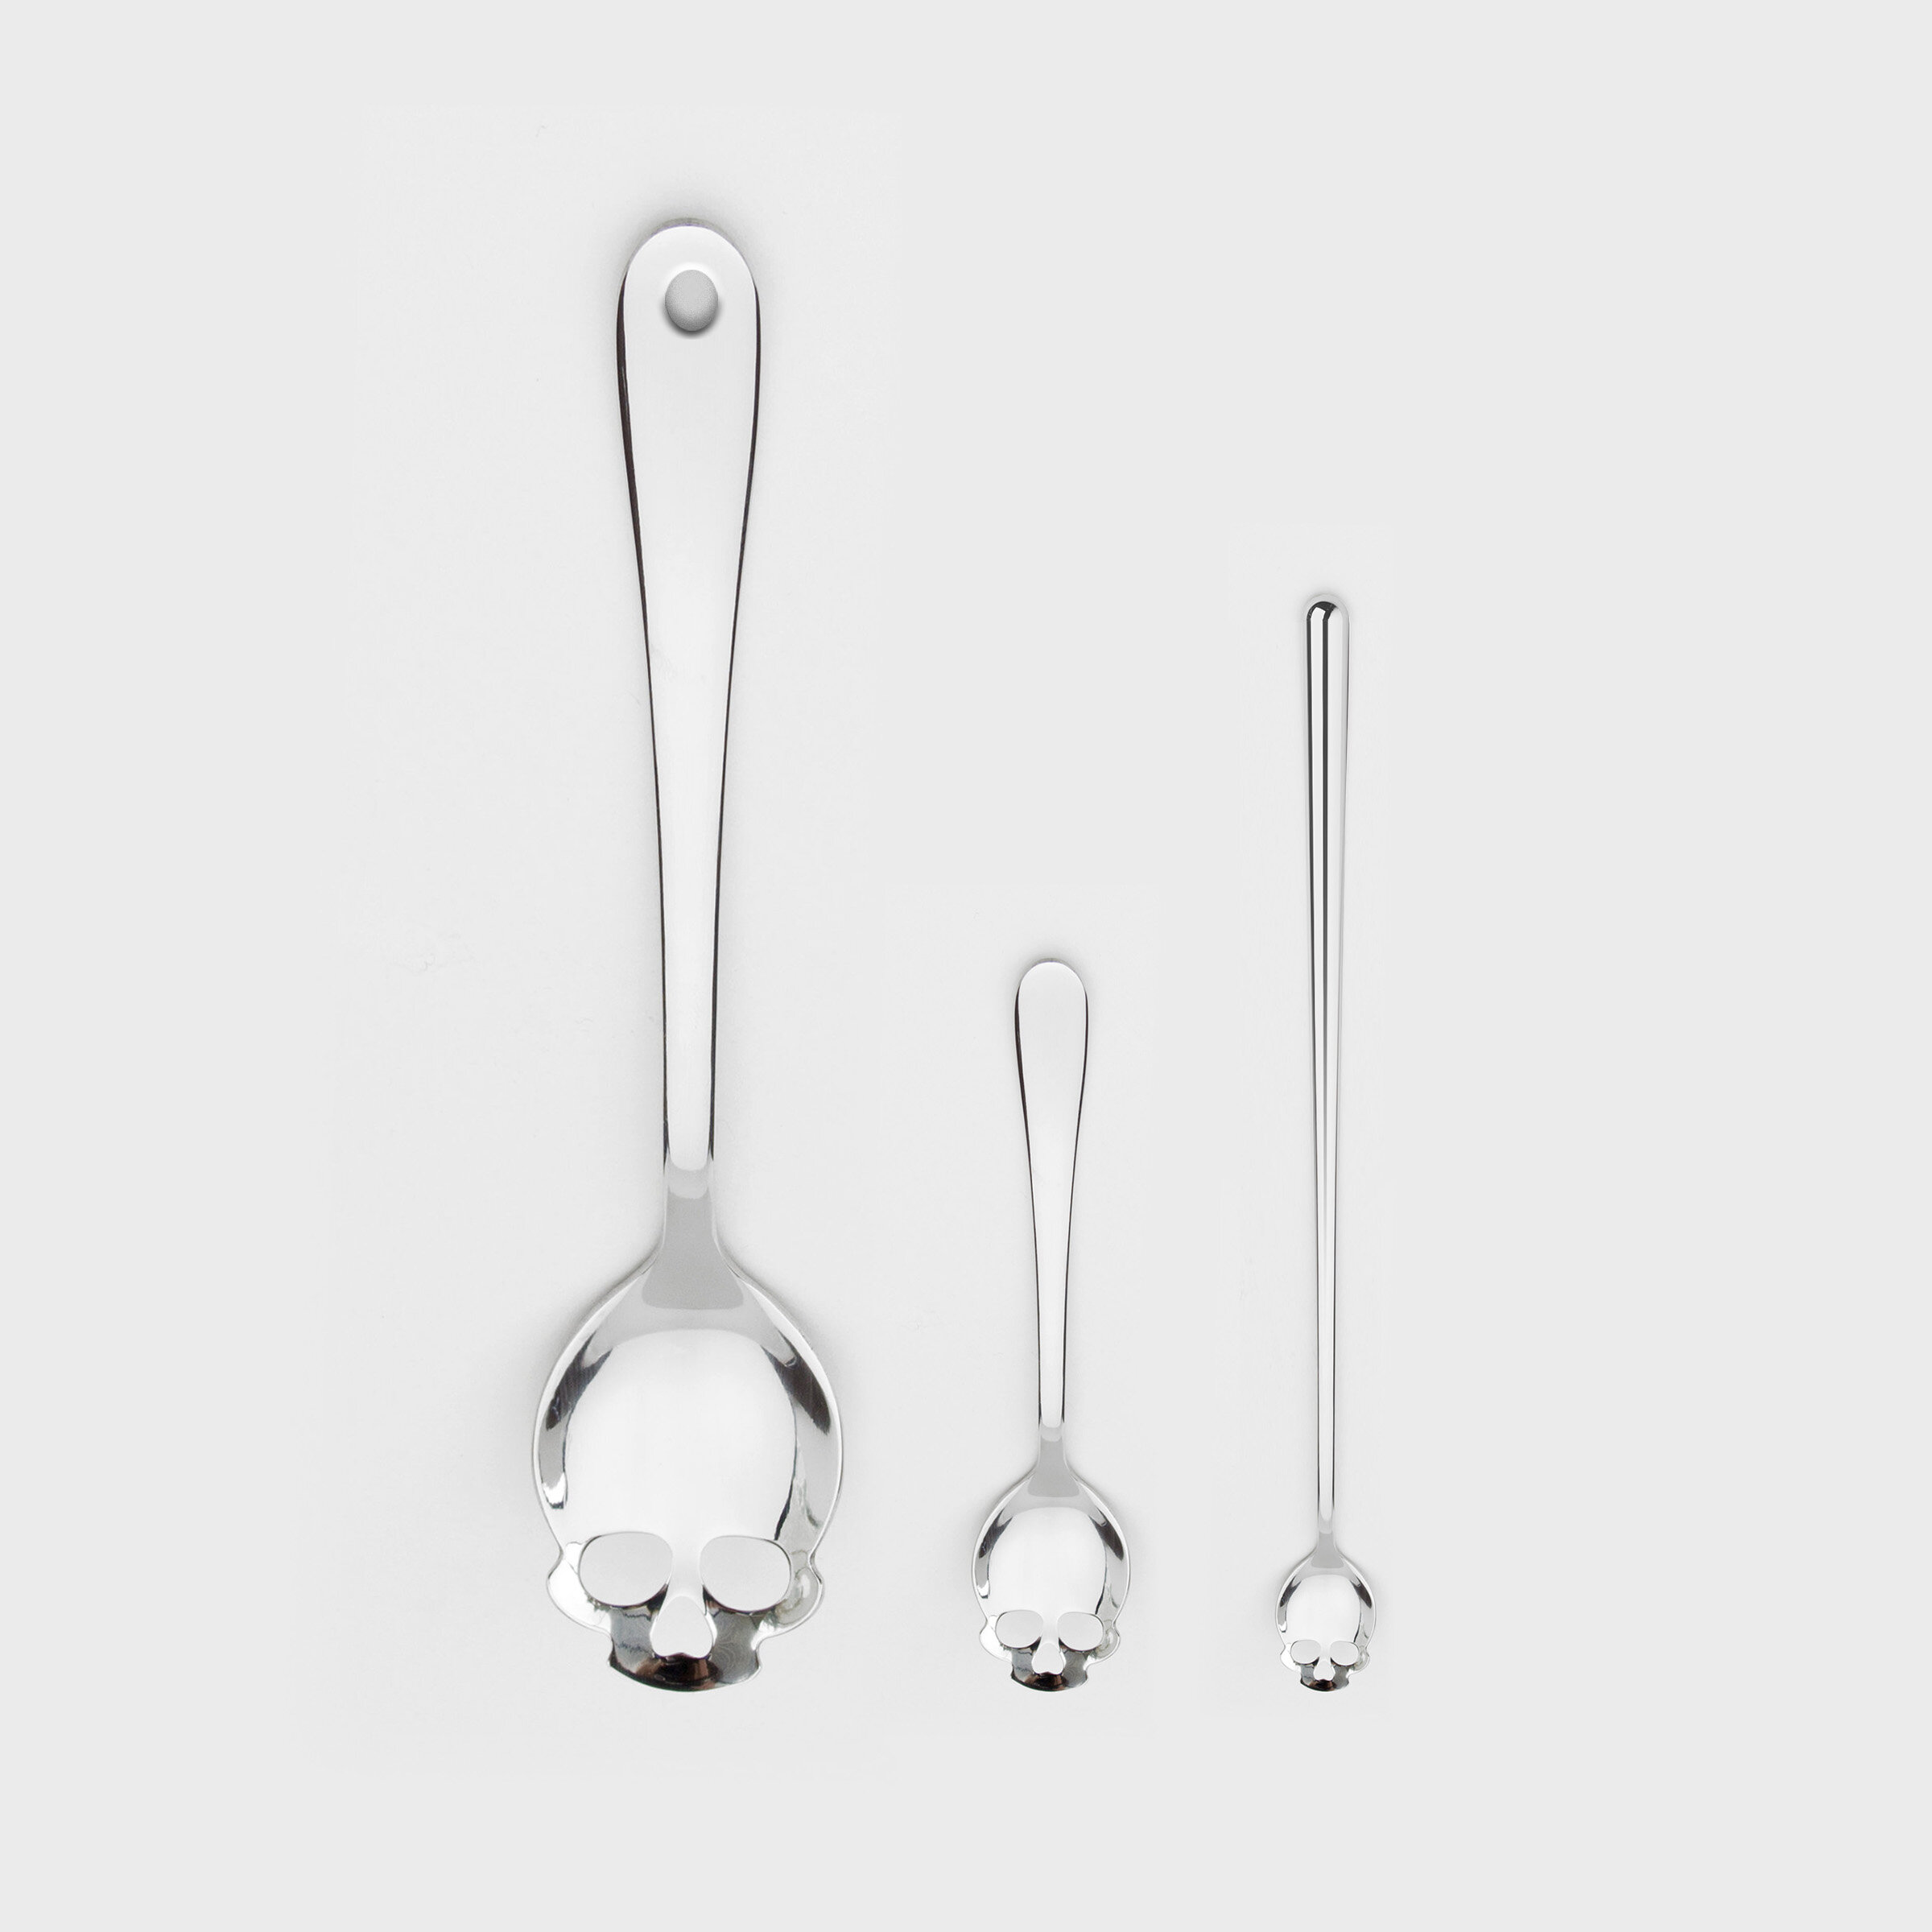 Full Set of Skull Spoons